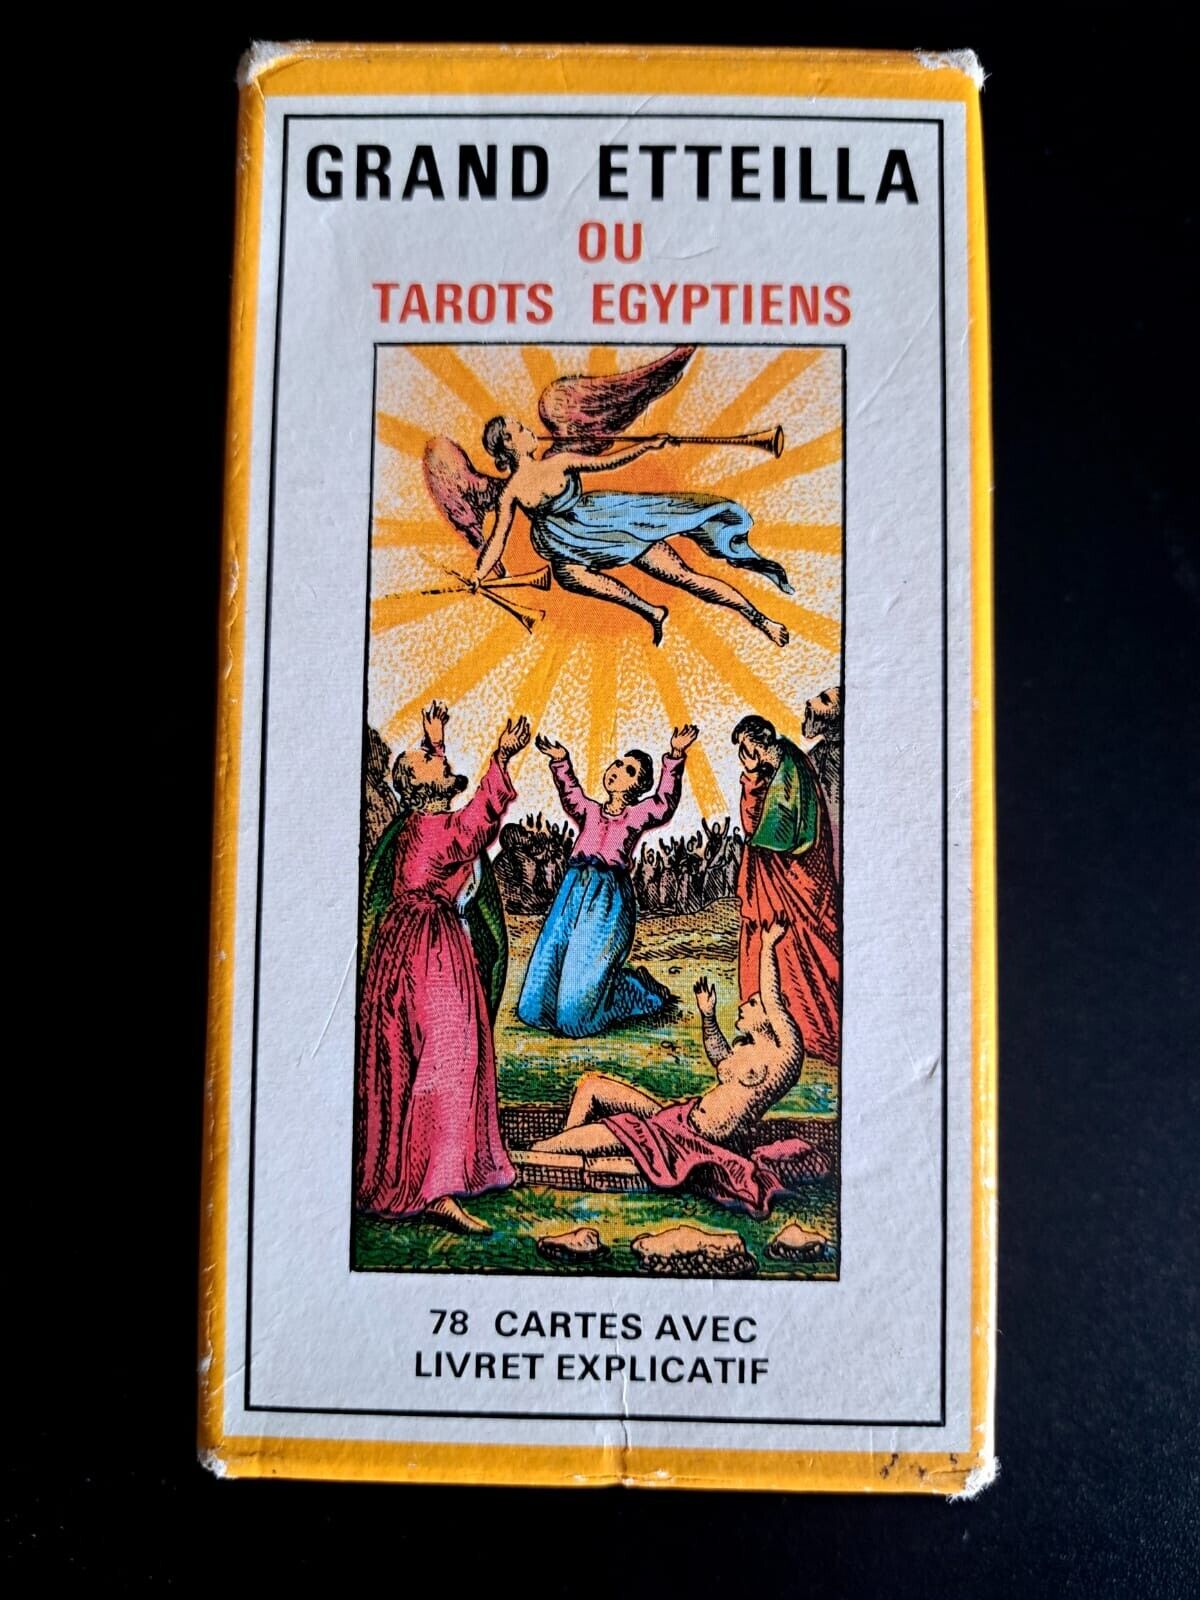 Grand Etteilla - Egyptian Gypsies Tarot - Cartomancy Grimaud 1977